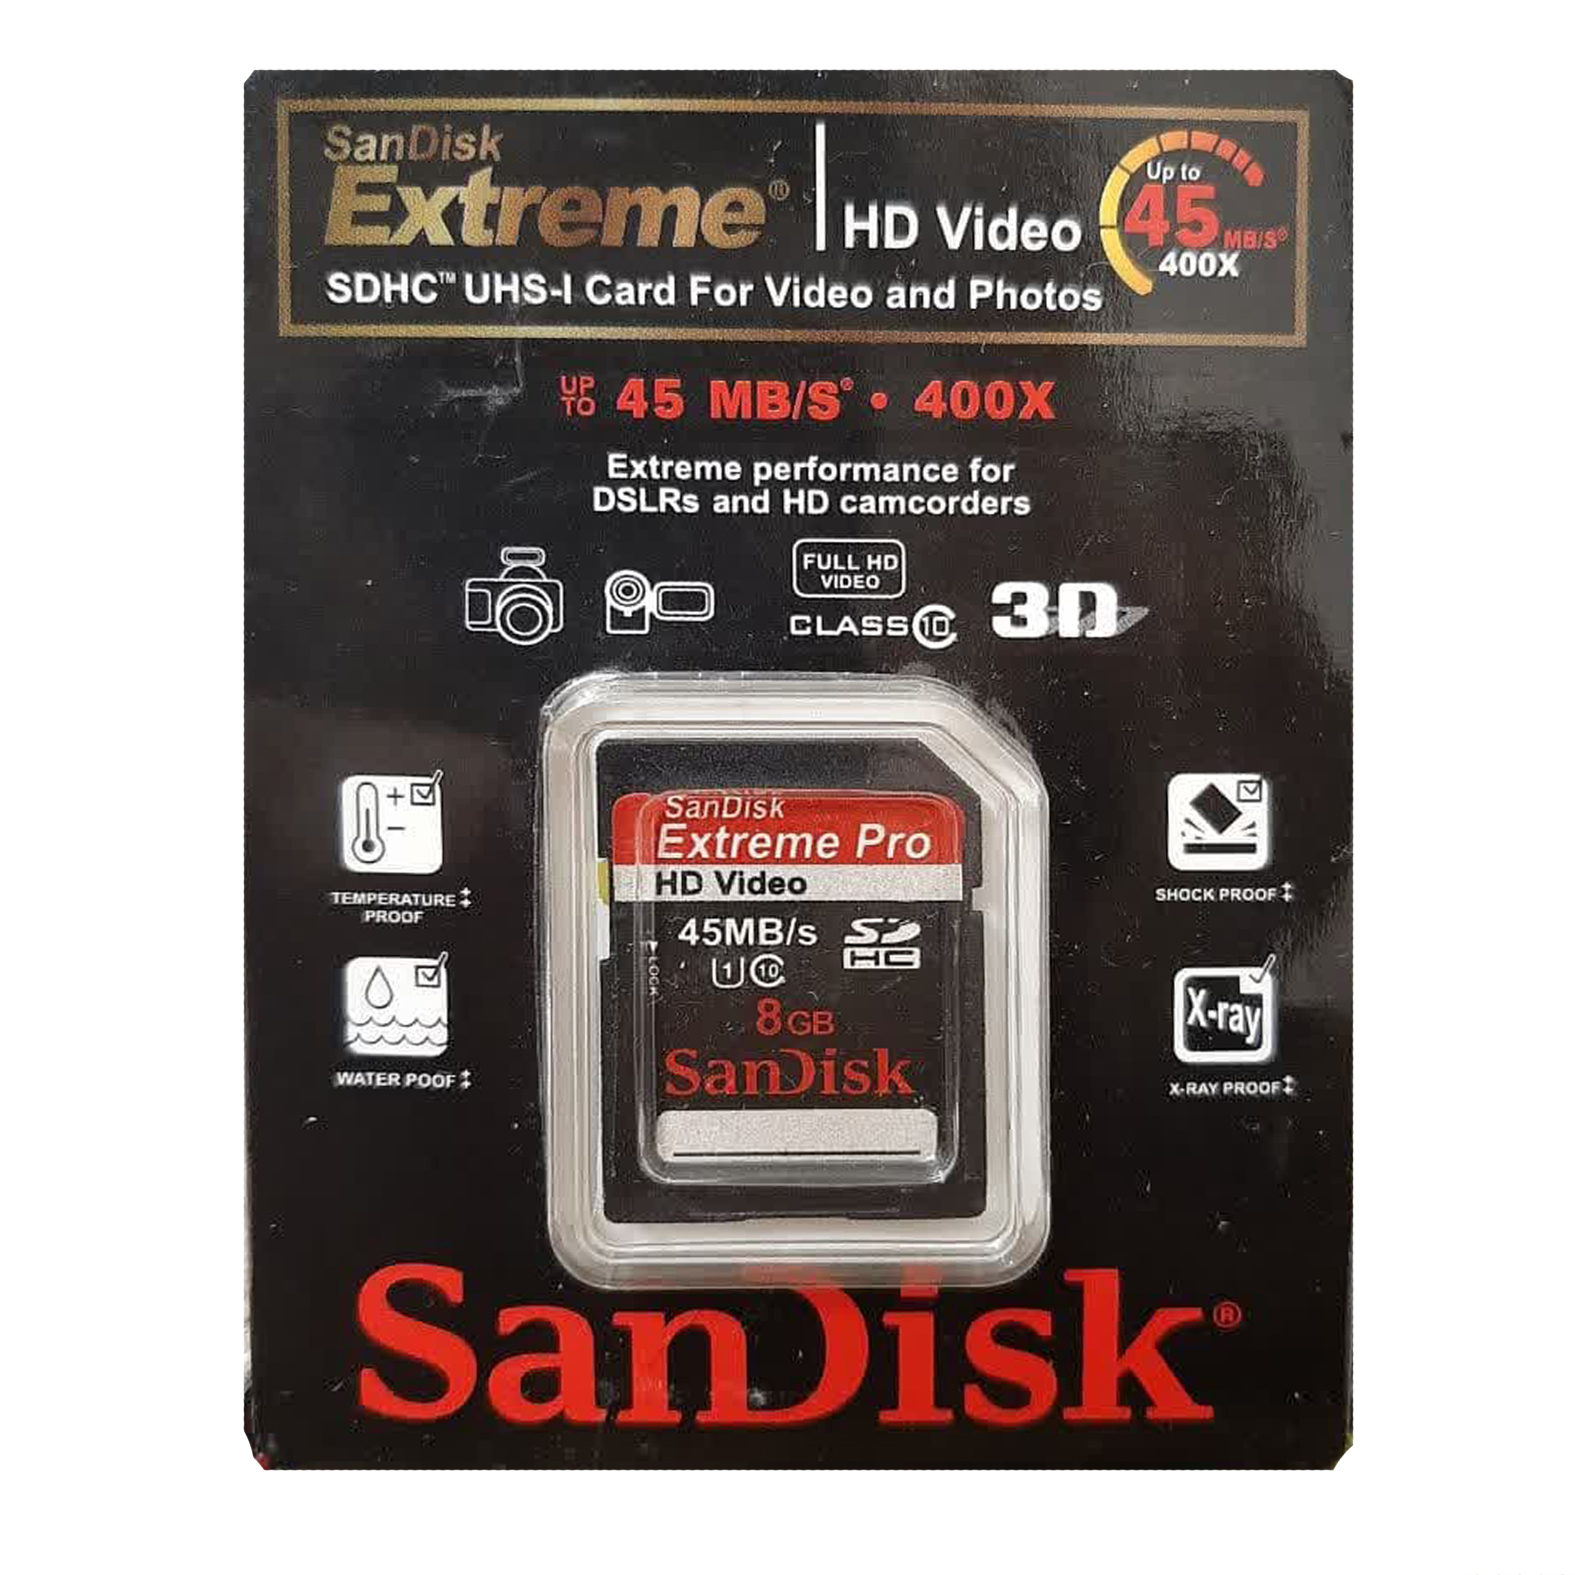  کارت حافظه SDHC سن دیسک مدل 400X کلاس 10 استانداردUHS-I U1 سرعت 45MB/s ظرفیت 8 گیگابایت